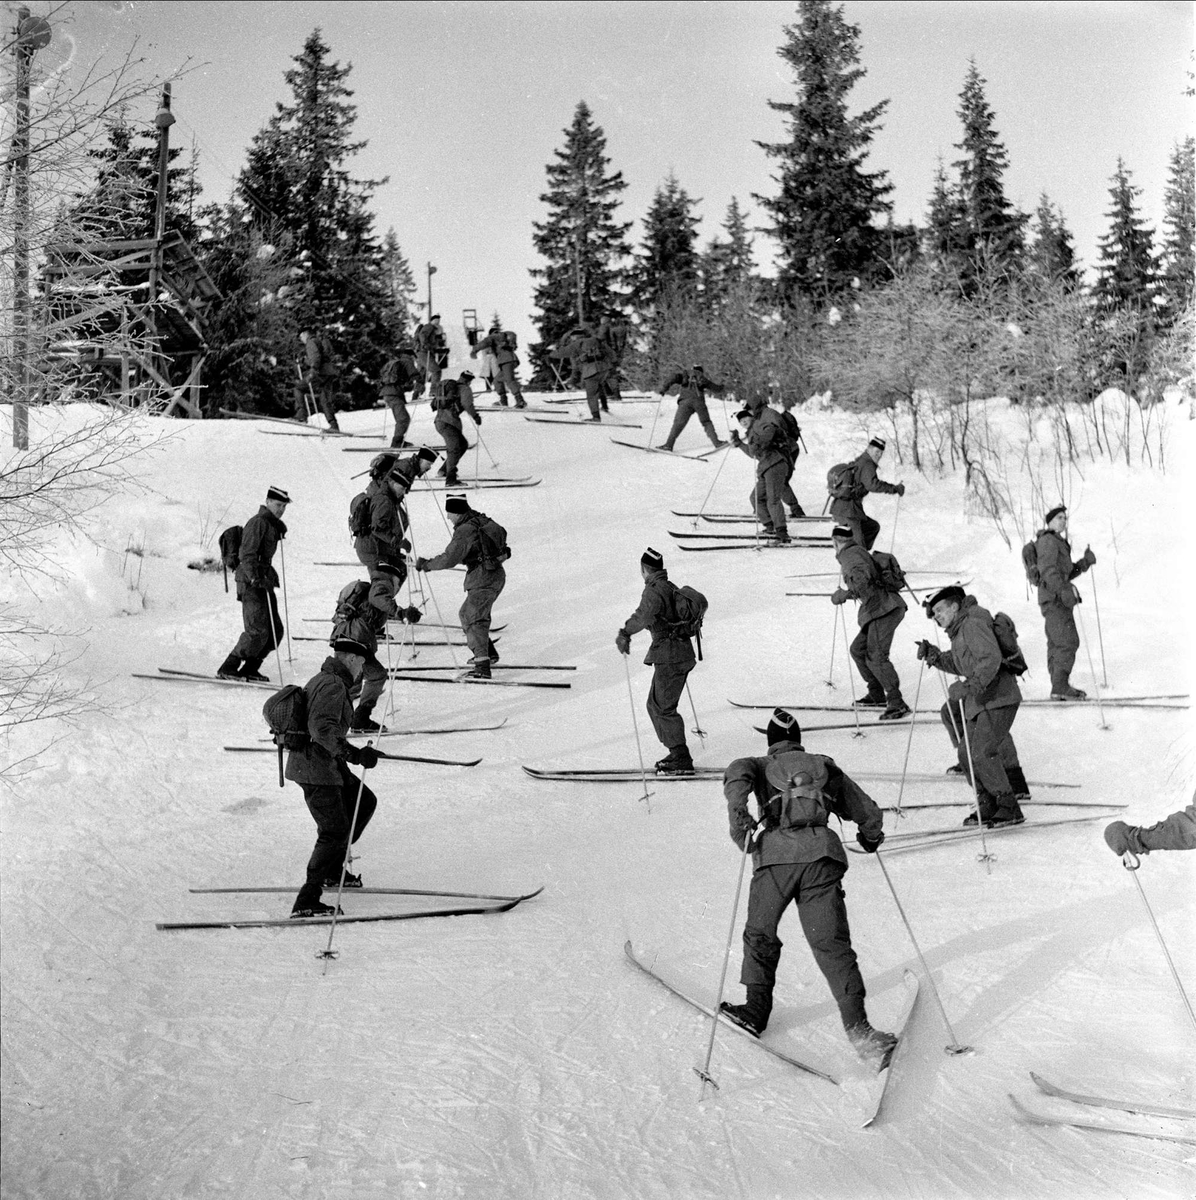 Garden, organisert leting etter skiløper, Nordmarka, Oslo, februar, 1959.